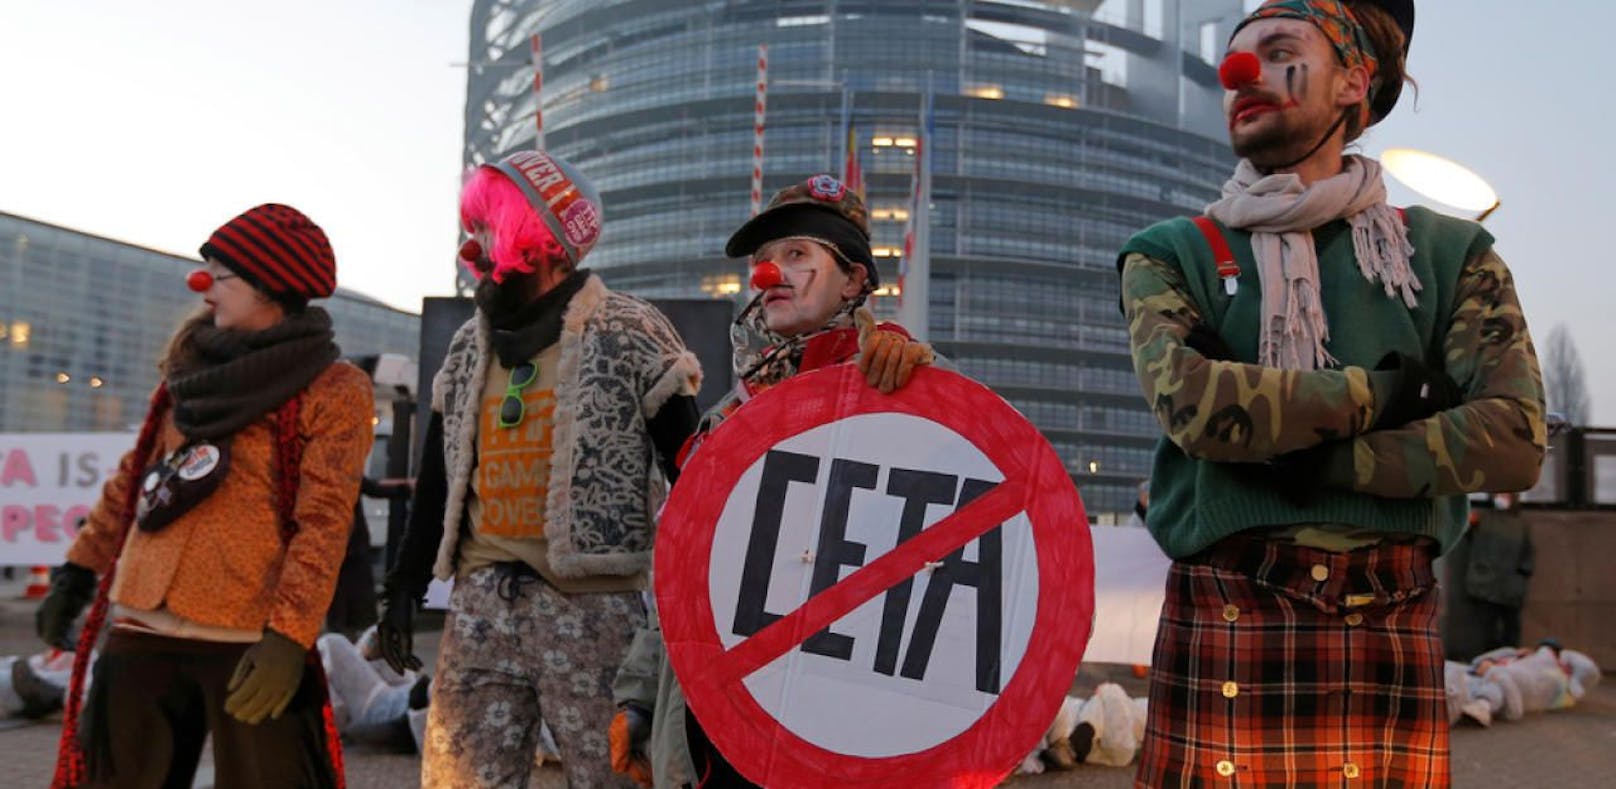 CETA-Protest vor dem EU-Parlament.